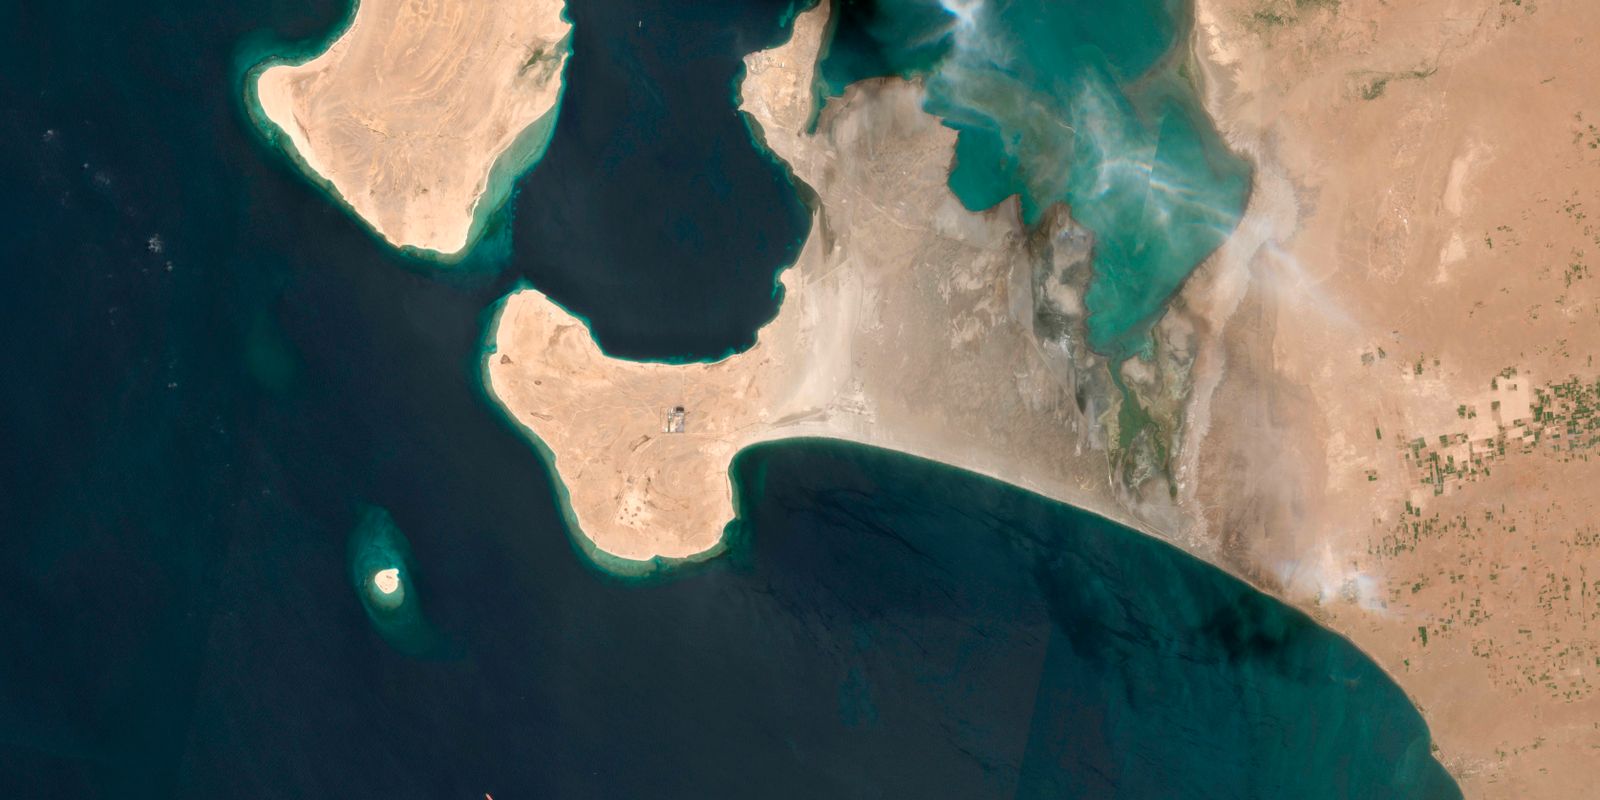 huthimilisen: usa bombar jemenitisk oljehamn